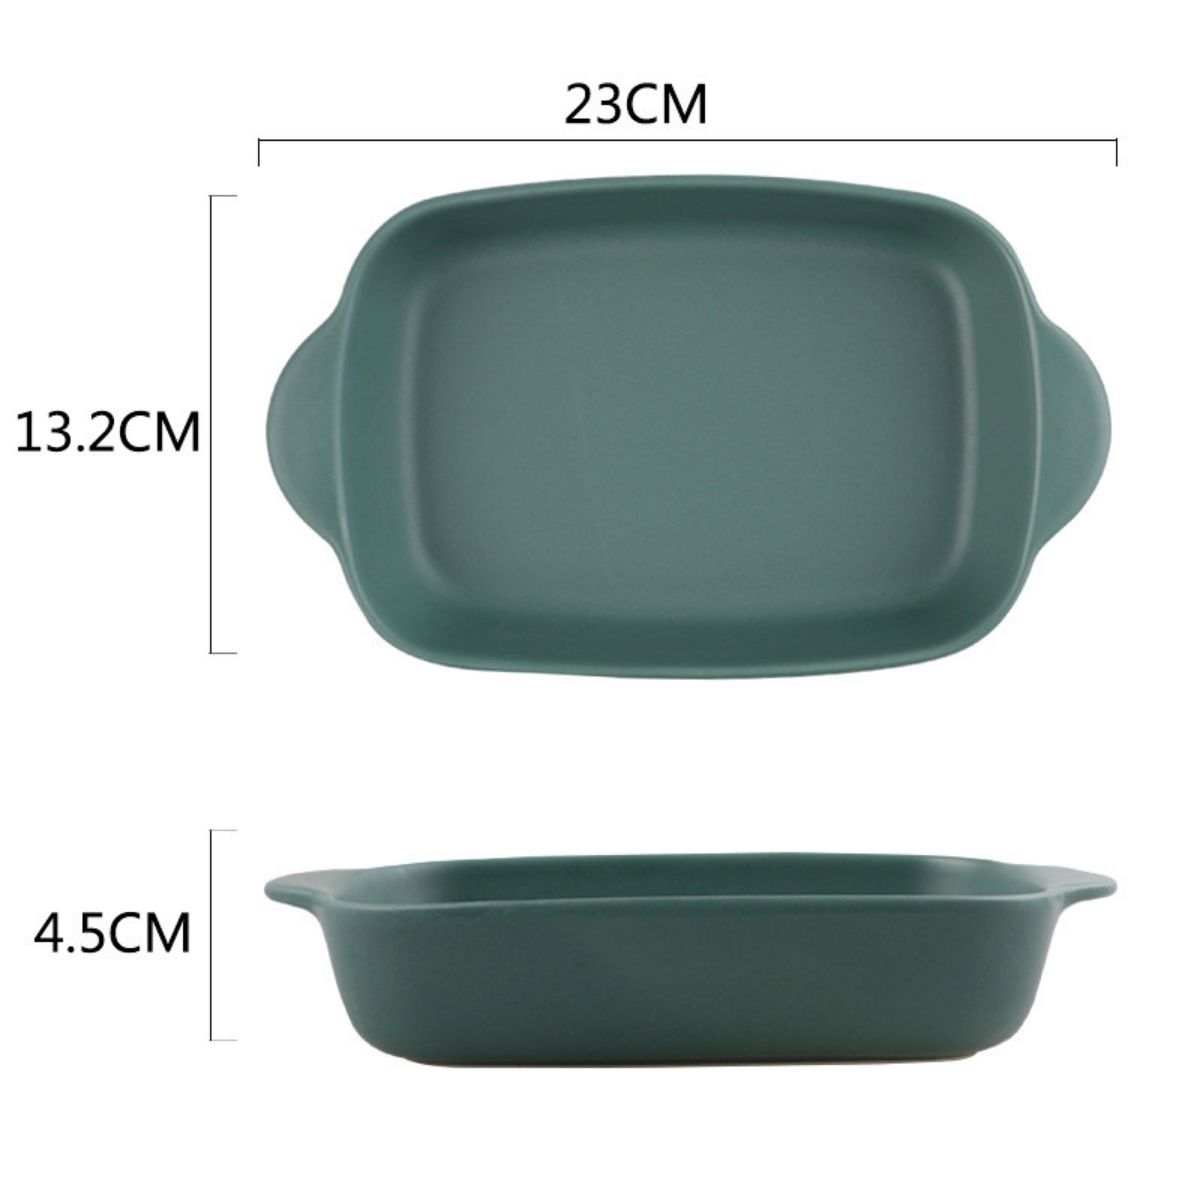 7126 Nordic microwave ceramic binaural baked rice dish rectangular baking bowl baking dish baking mold oven dinner plate